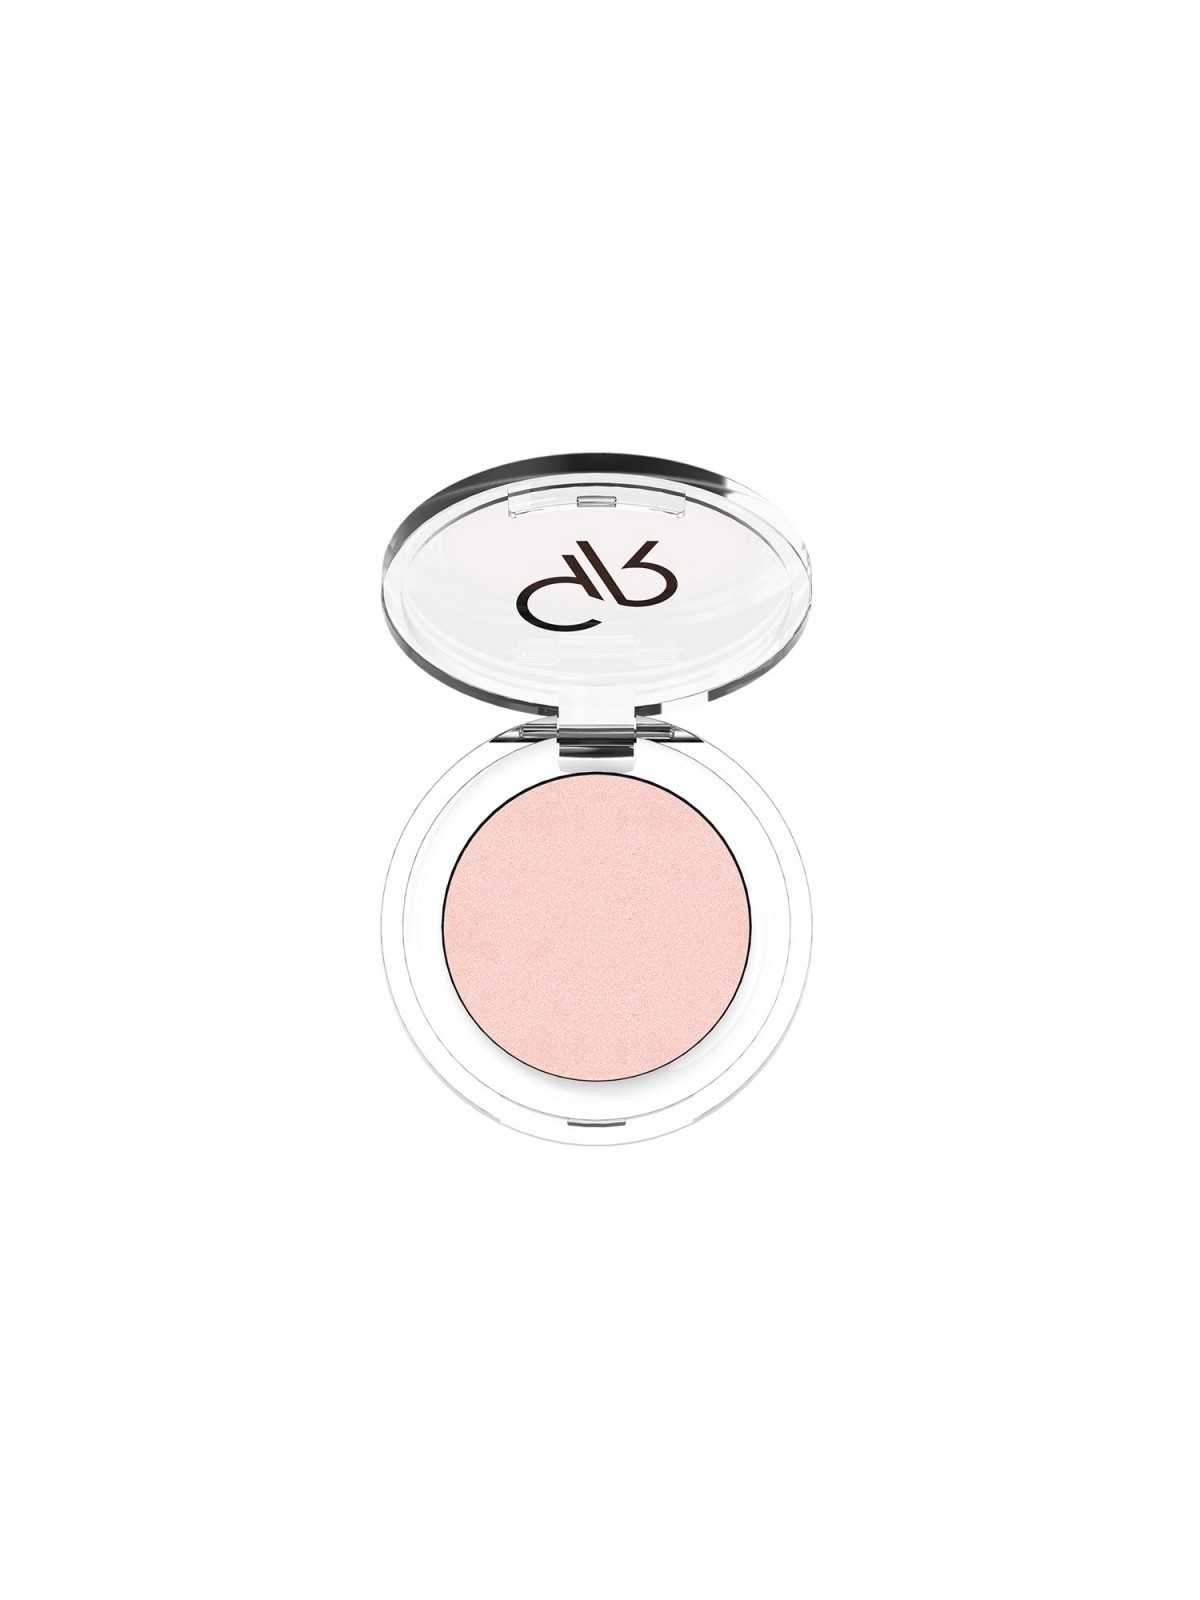 Comprar Sombra de ojos Pearl nº43 .- Golden Rose en Maquillaje por sólo 5,99 € o un precio específico de 5,99 € en Thalie Care